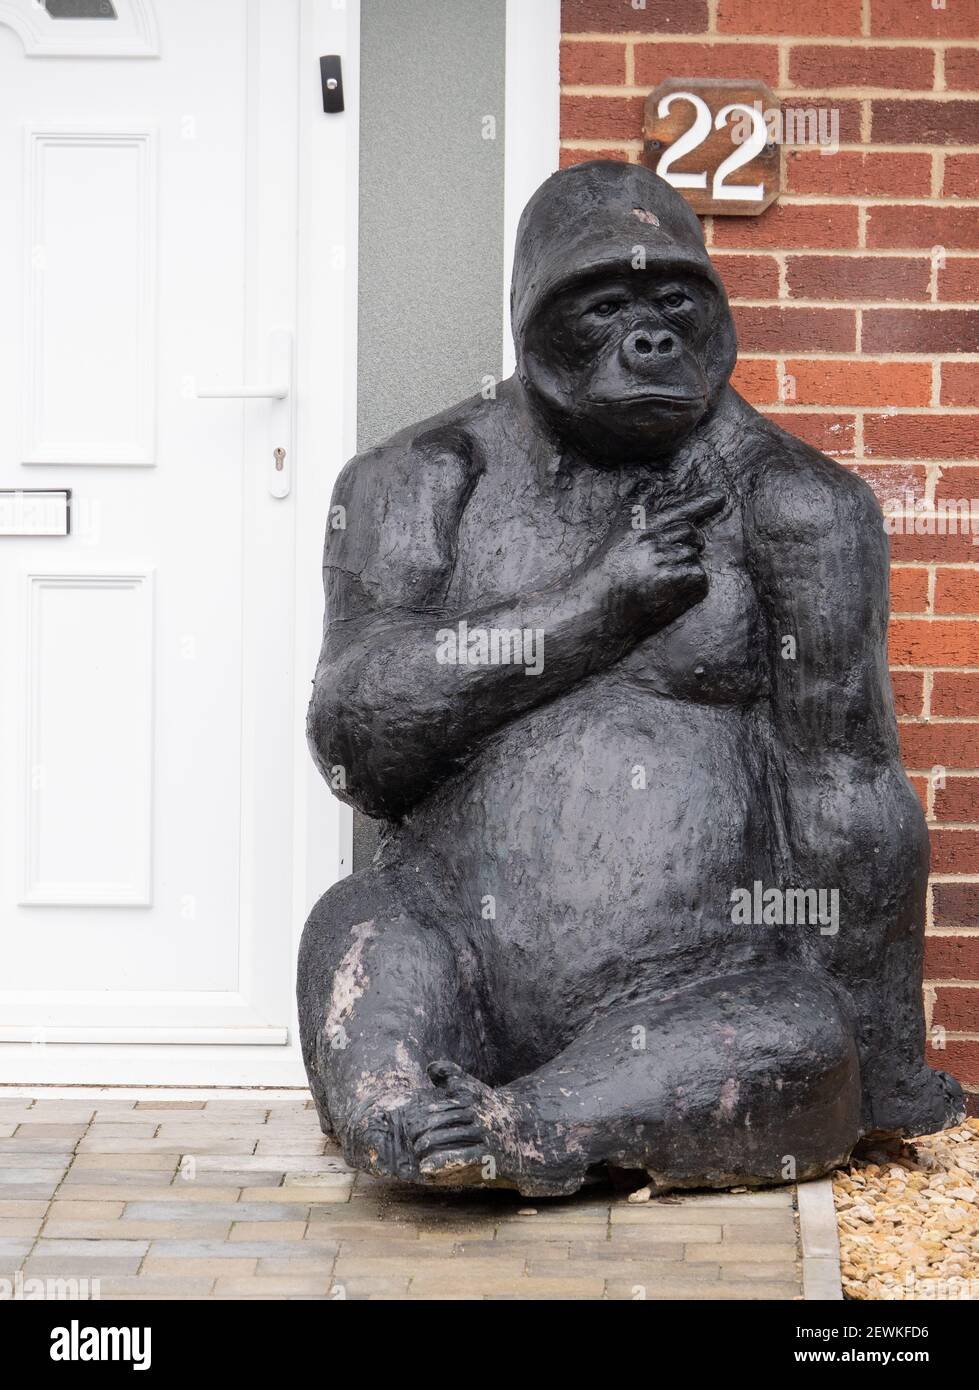 Un inusual ornamento de jardín de un Gorila de tamaño natural sentado fuera de la puerta de alguien en Westbury, Wiltshire, Inglaterra, Reino Unido. Foto de stock